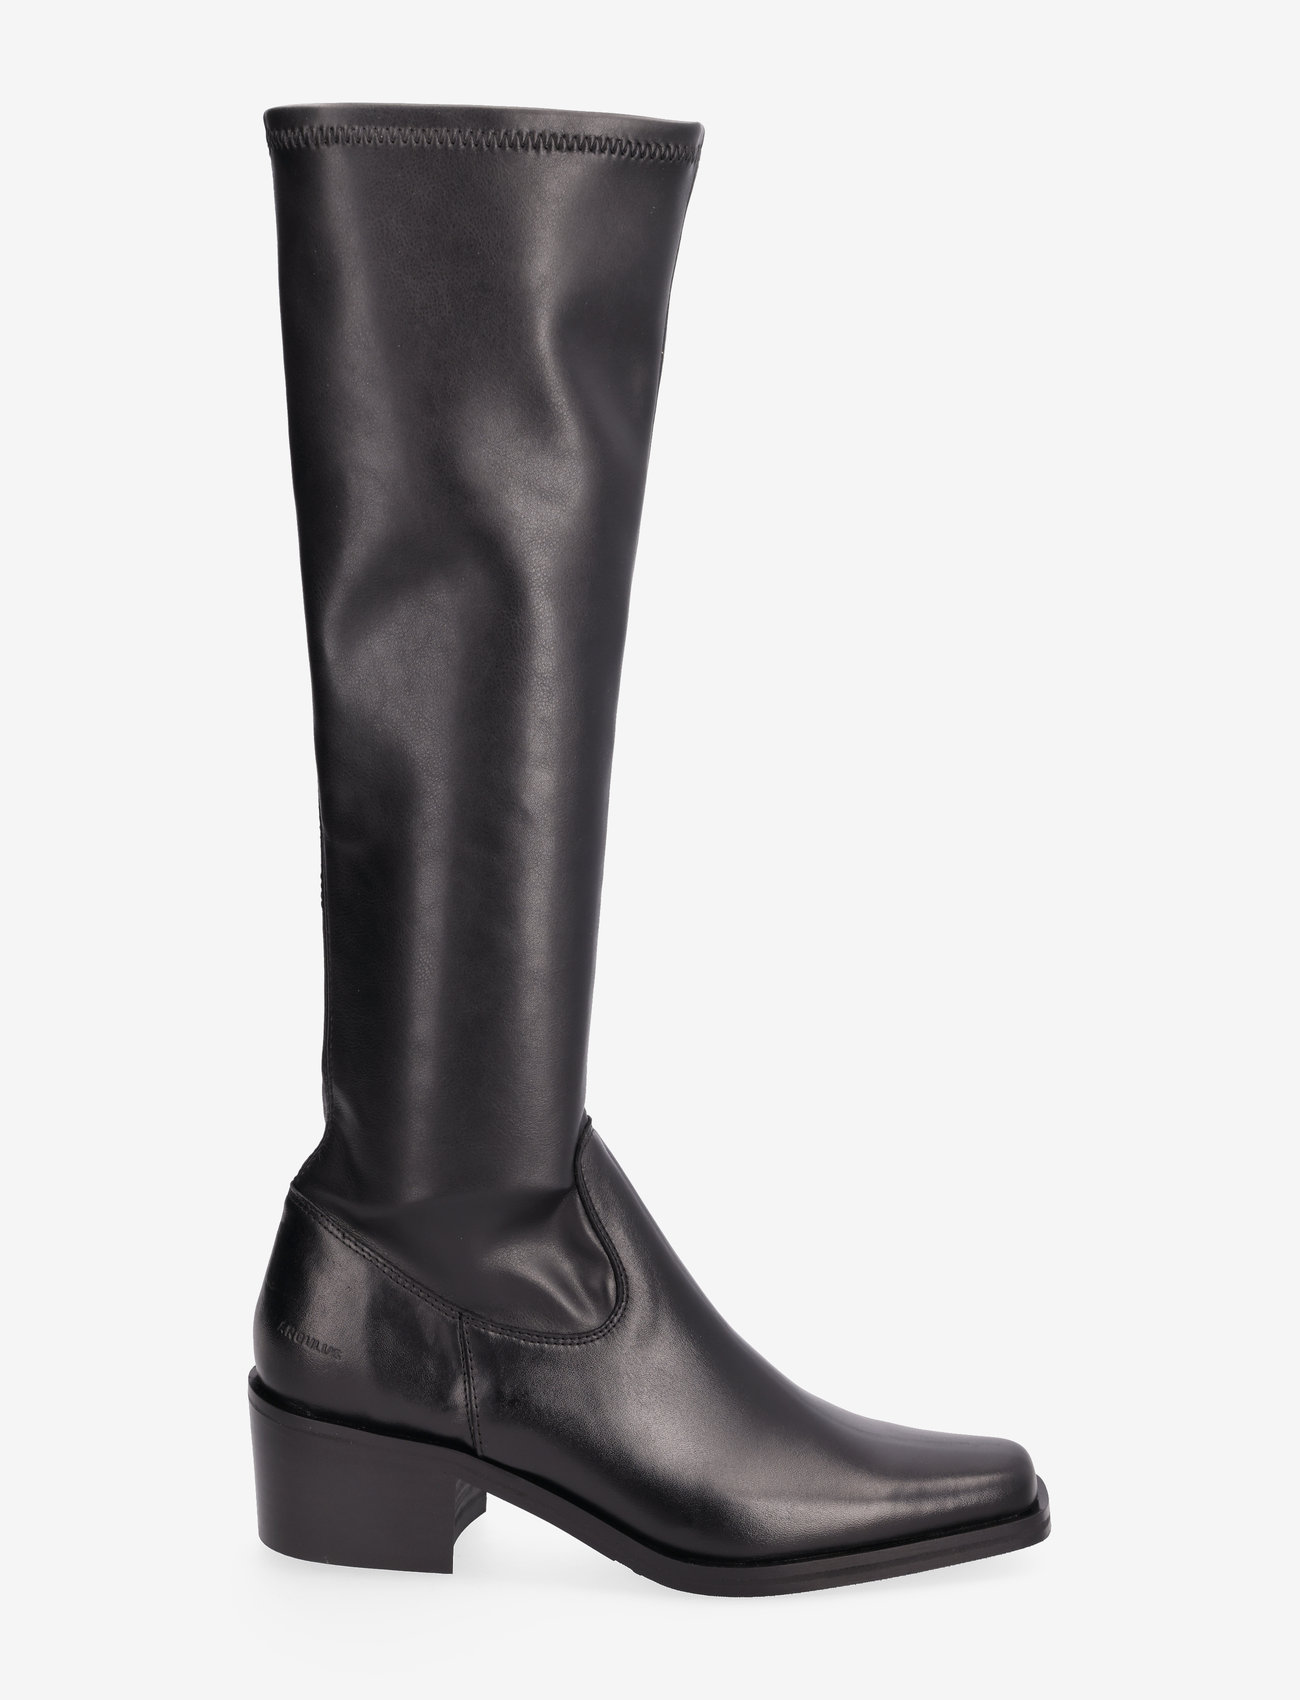 ANGULUS - Boots - Block heel - langskaftede støvler - 1604/1746 black/black - 1